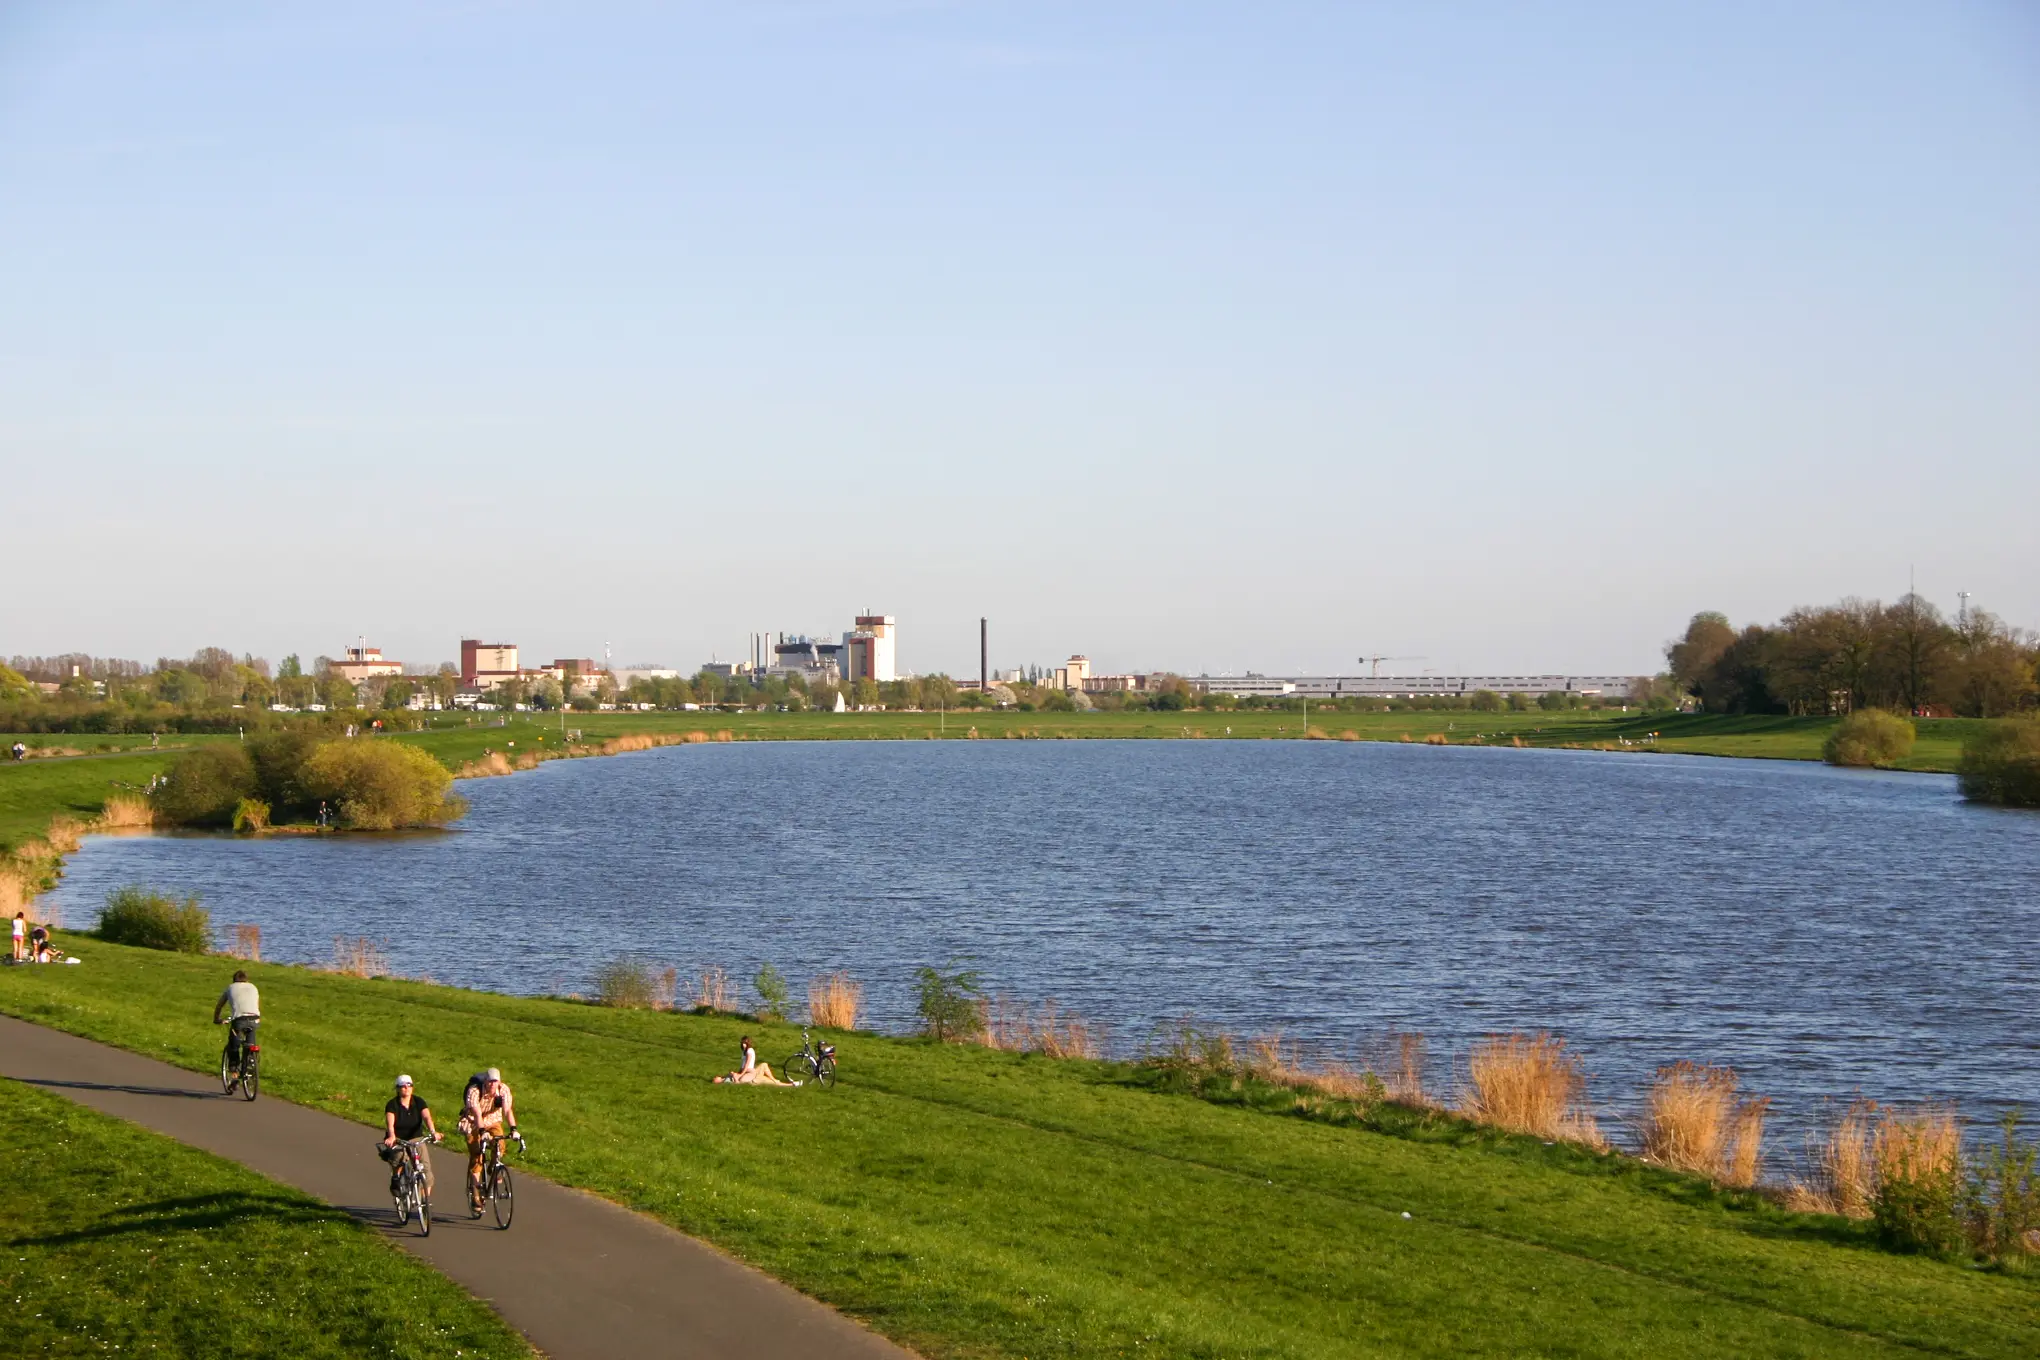 Viele Bremer zieht es in den Sommermonaten jedes Wochenende an den Werdersee